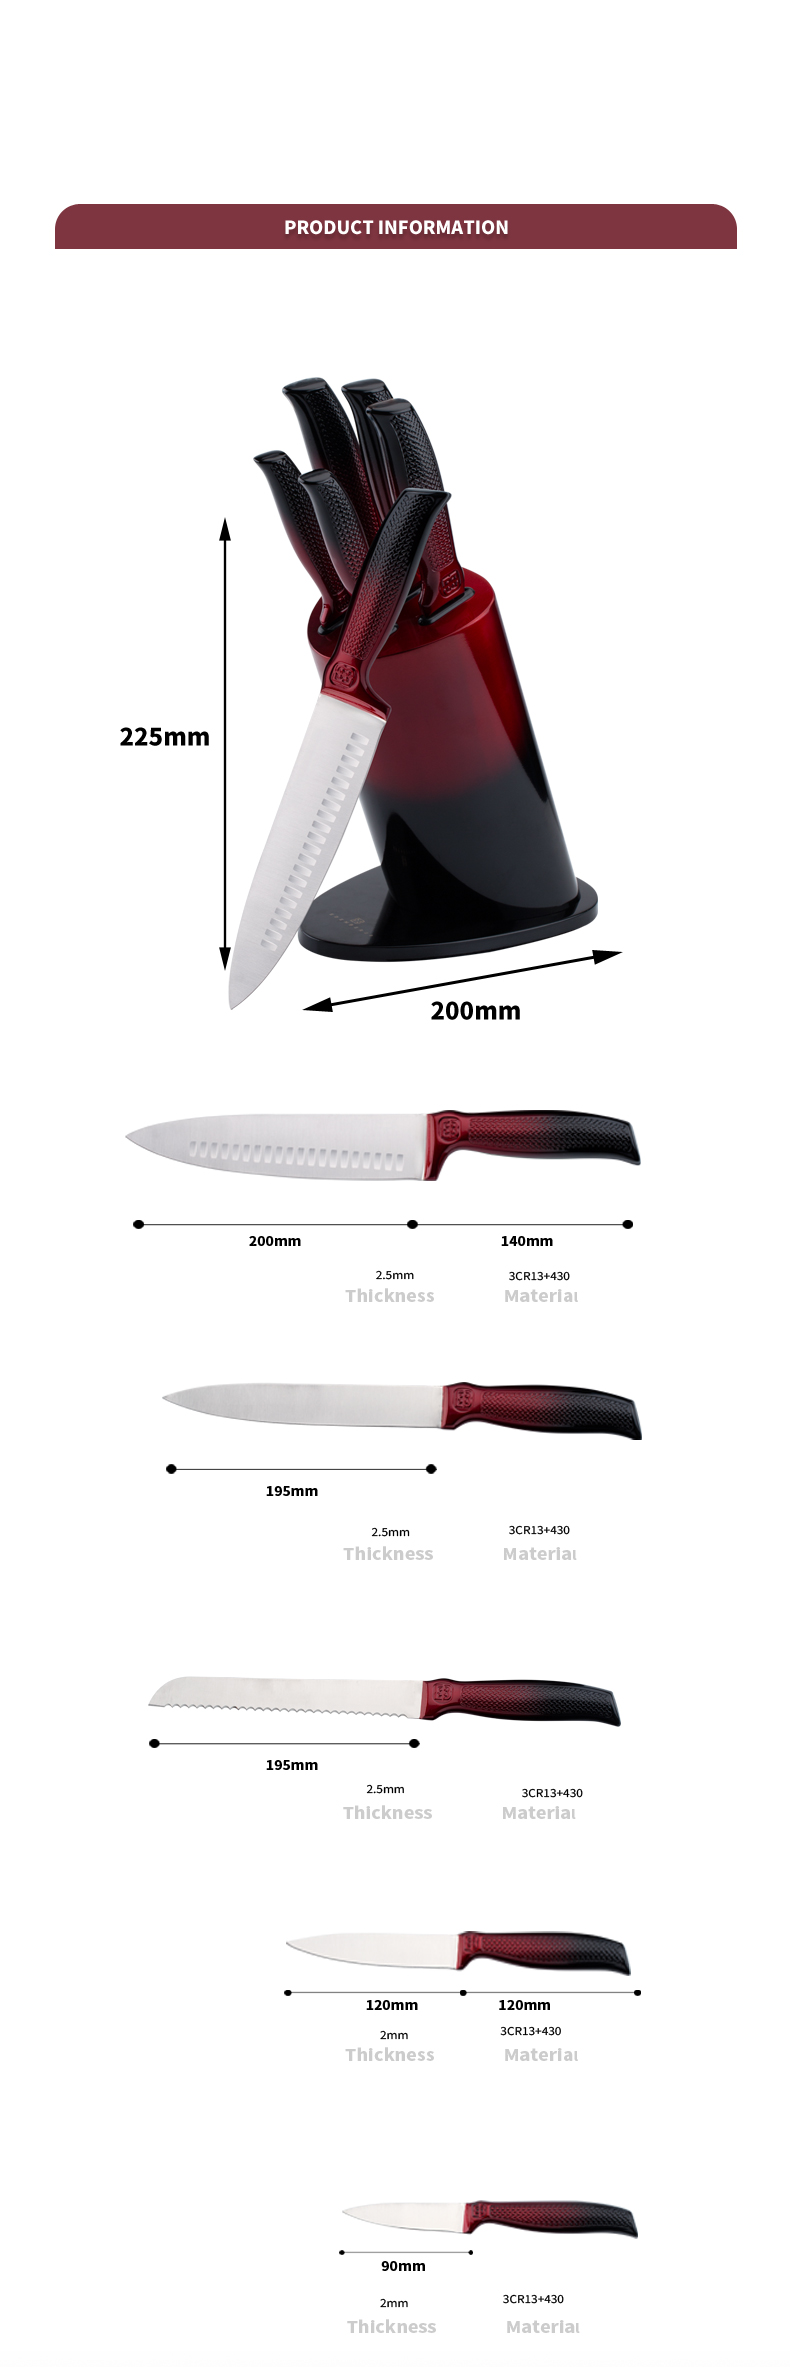 K129-Customized 5 Pcs 3cr13 Stainless Steel Kitchen Knife Chef Knife Set with Colorful Block-ZX | ມີດເຮືອນຄົວ, ເຄື່ອງມືໃນເຮືອນຄົວ, ແມ່ພິມ Silicone Cake, ກະດານຕັດ, ຊຸດເຄື່ອງມືອົບ, ມີດພໍ່ຄົວ, ມີດສະເຕັກ, ມີດ Slicer, ມີດທີ່ເປັນປະໂຫຍດ, ມີດ Paring, ມີດຕັນ, ມີດຢືນ, ມີດ Santoku, ມີດເດັກນ້ອຍ, ມີດພາດສະຕິກ, ການແຕ້ມຮູບທີ່ບໍ່ແມ່ນໄມ້ ມີດ,ມີດທີ່ມີສີສັນ,ມີດສະແຕນເລດ,ເຄື່ອງເປີດກະປ໋ອງ,ເຄື່ອງເປີດຂວດ,ເຄື່ອງປ໋ອງຊາ,Grater,ເຄື່ອງອົບໄຂ່,ເຄື່ອງມືເຮືອນຄົວໄນລອນ,ເຄື່ອງມືເຮືອນຄົວຊິລິໂຄນ,ເຄື່ອງຕັດຄຸກກີ້,ຊຸດມີດແຕ່ງກິນ,ມີດແຫຼມ,ປອກເປືອກ,ມີດເຄັກ,ມີດເນີຍແຂງ, ມີດ, ຊິລິໂຄນ Spatular, ບ່ວງຊິລິໂຄນ, ທໍ່ອາຫານ, ມີດຟອກ, ມີດຕັດເຮືອນຄົວ, ມີດອົບເຄັກ, ມີດປຸງອາຫານເດັກນ້ອຍ, ມີດແກະສະຫຼັກ